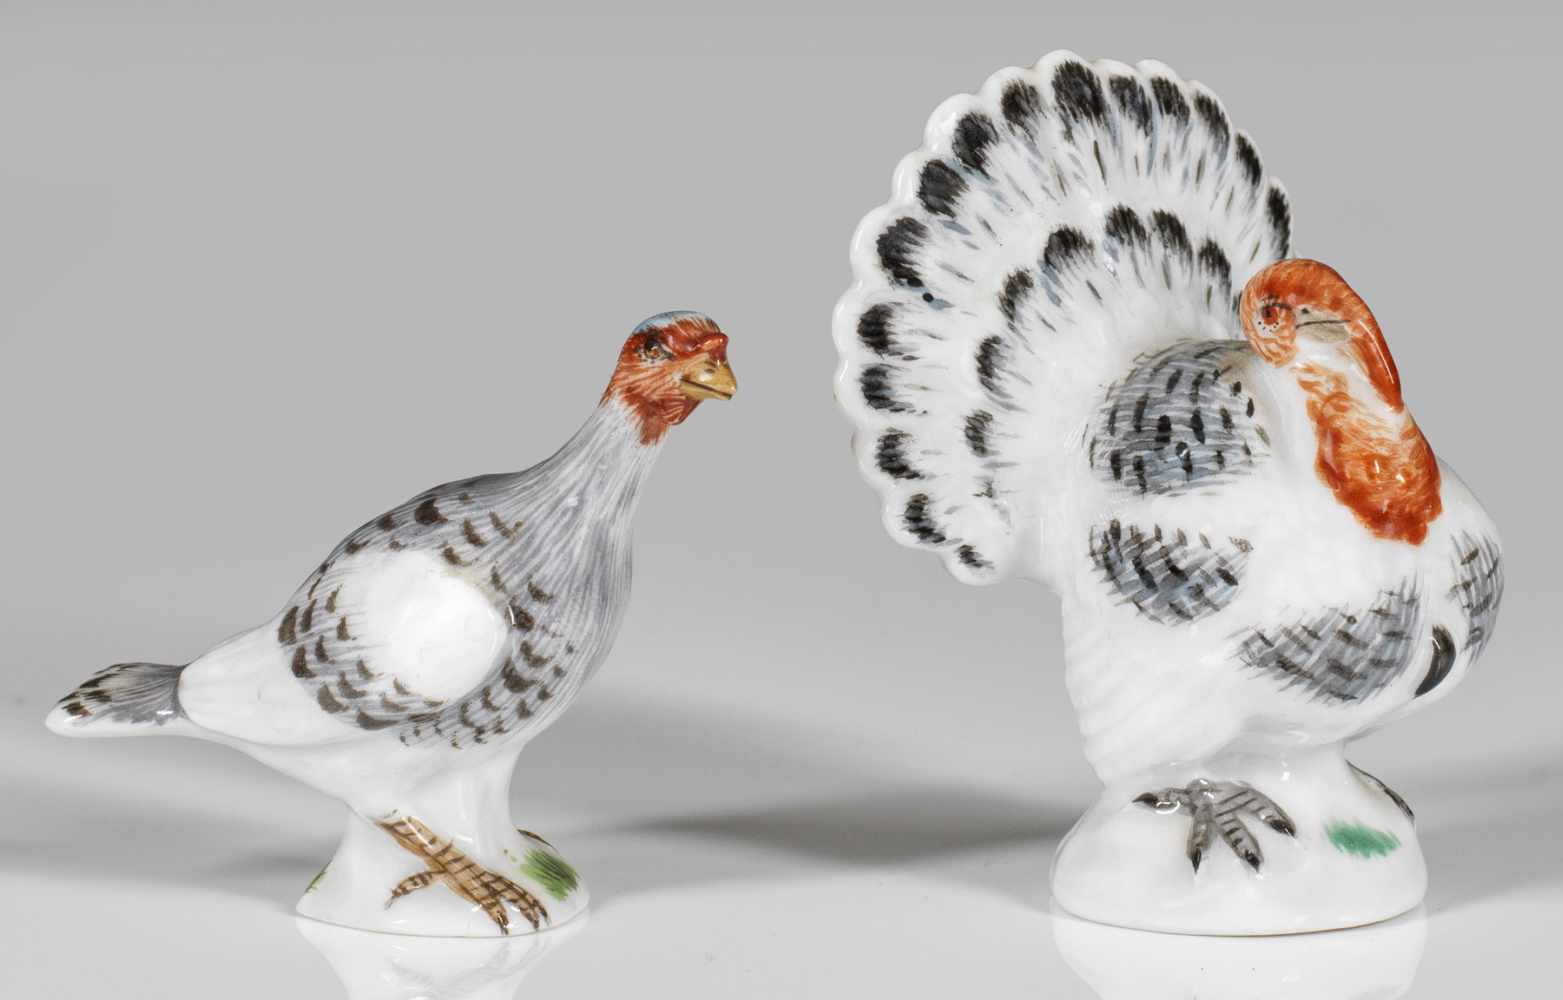 Zwei Miniatur-Tierfigureneines Truthahnes und einer Henne in naturalistischer Ausformung und